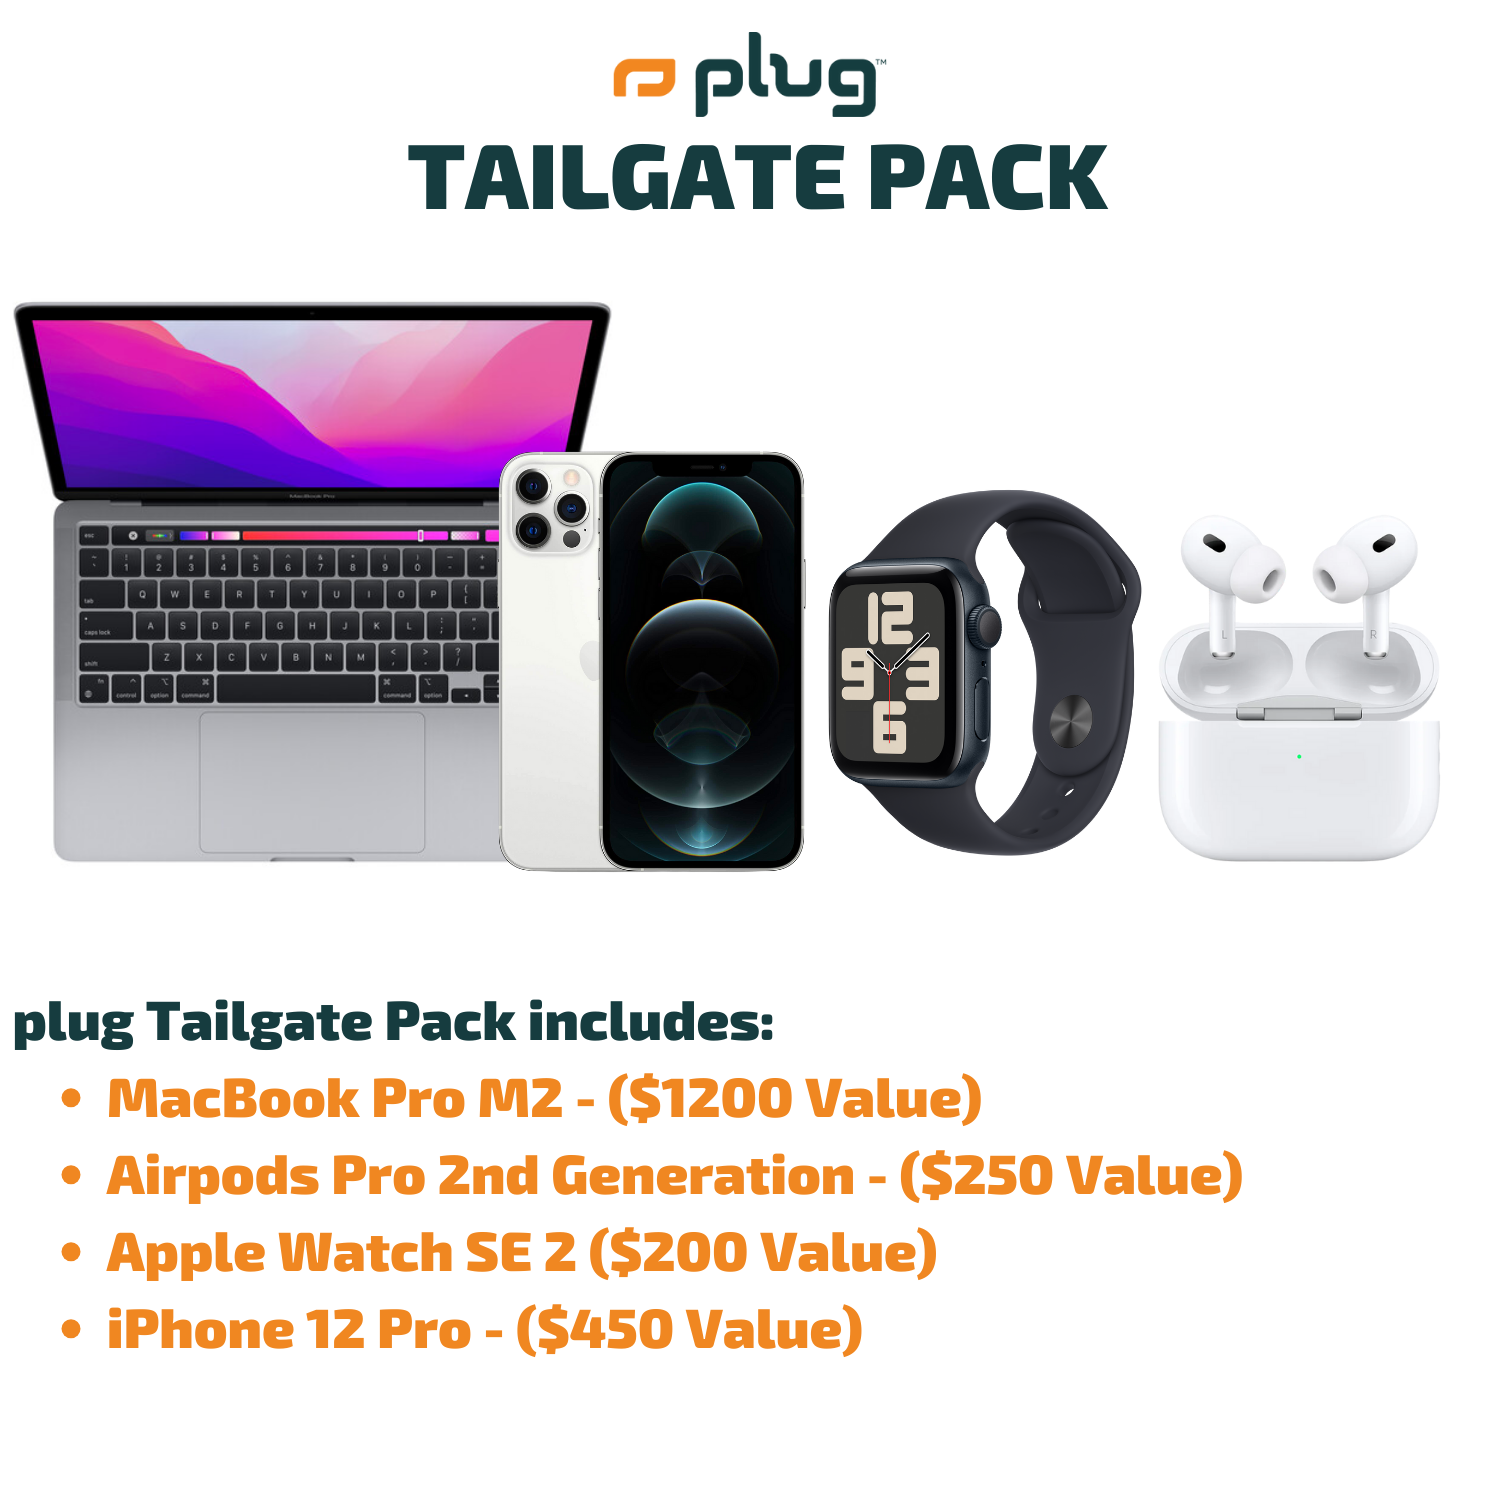 plug Tailgate Pack